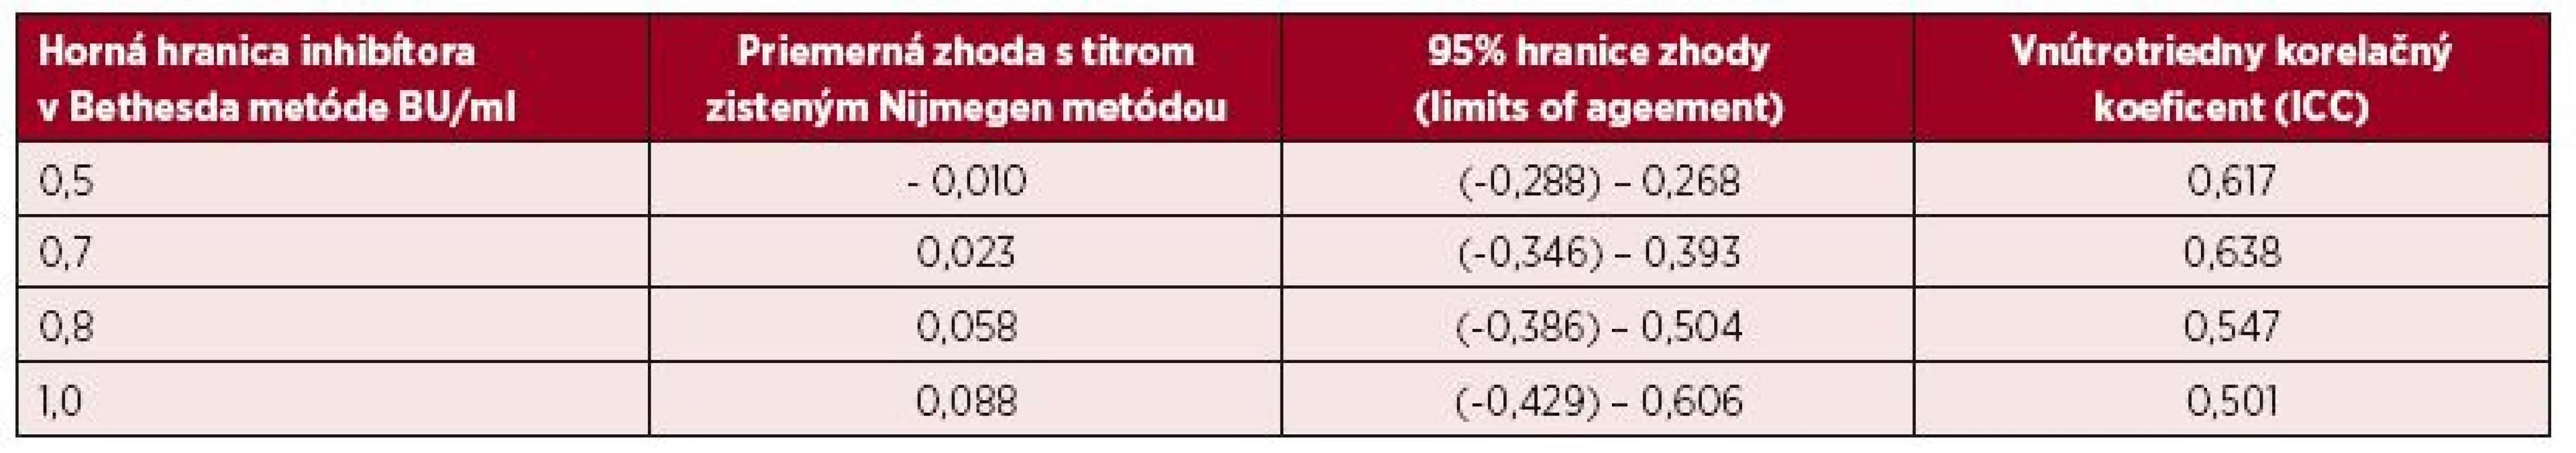 Bland-Altmanova metóda hodnotenia zhody výsledkov inhibítorov vyšetrených Nijmegen metódou pri rôznych hraniciach sledovaných titrov inhibítora do úrovne 1,0 BU/ml zistenej Bethesda metódou